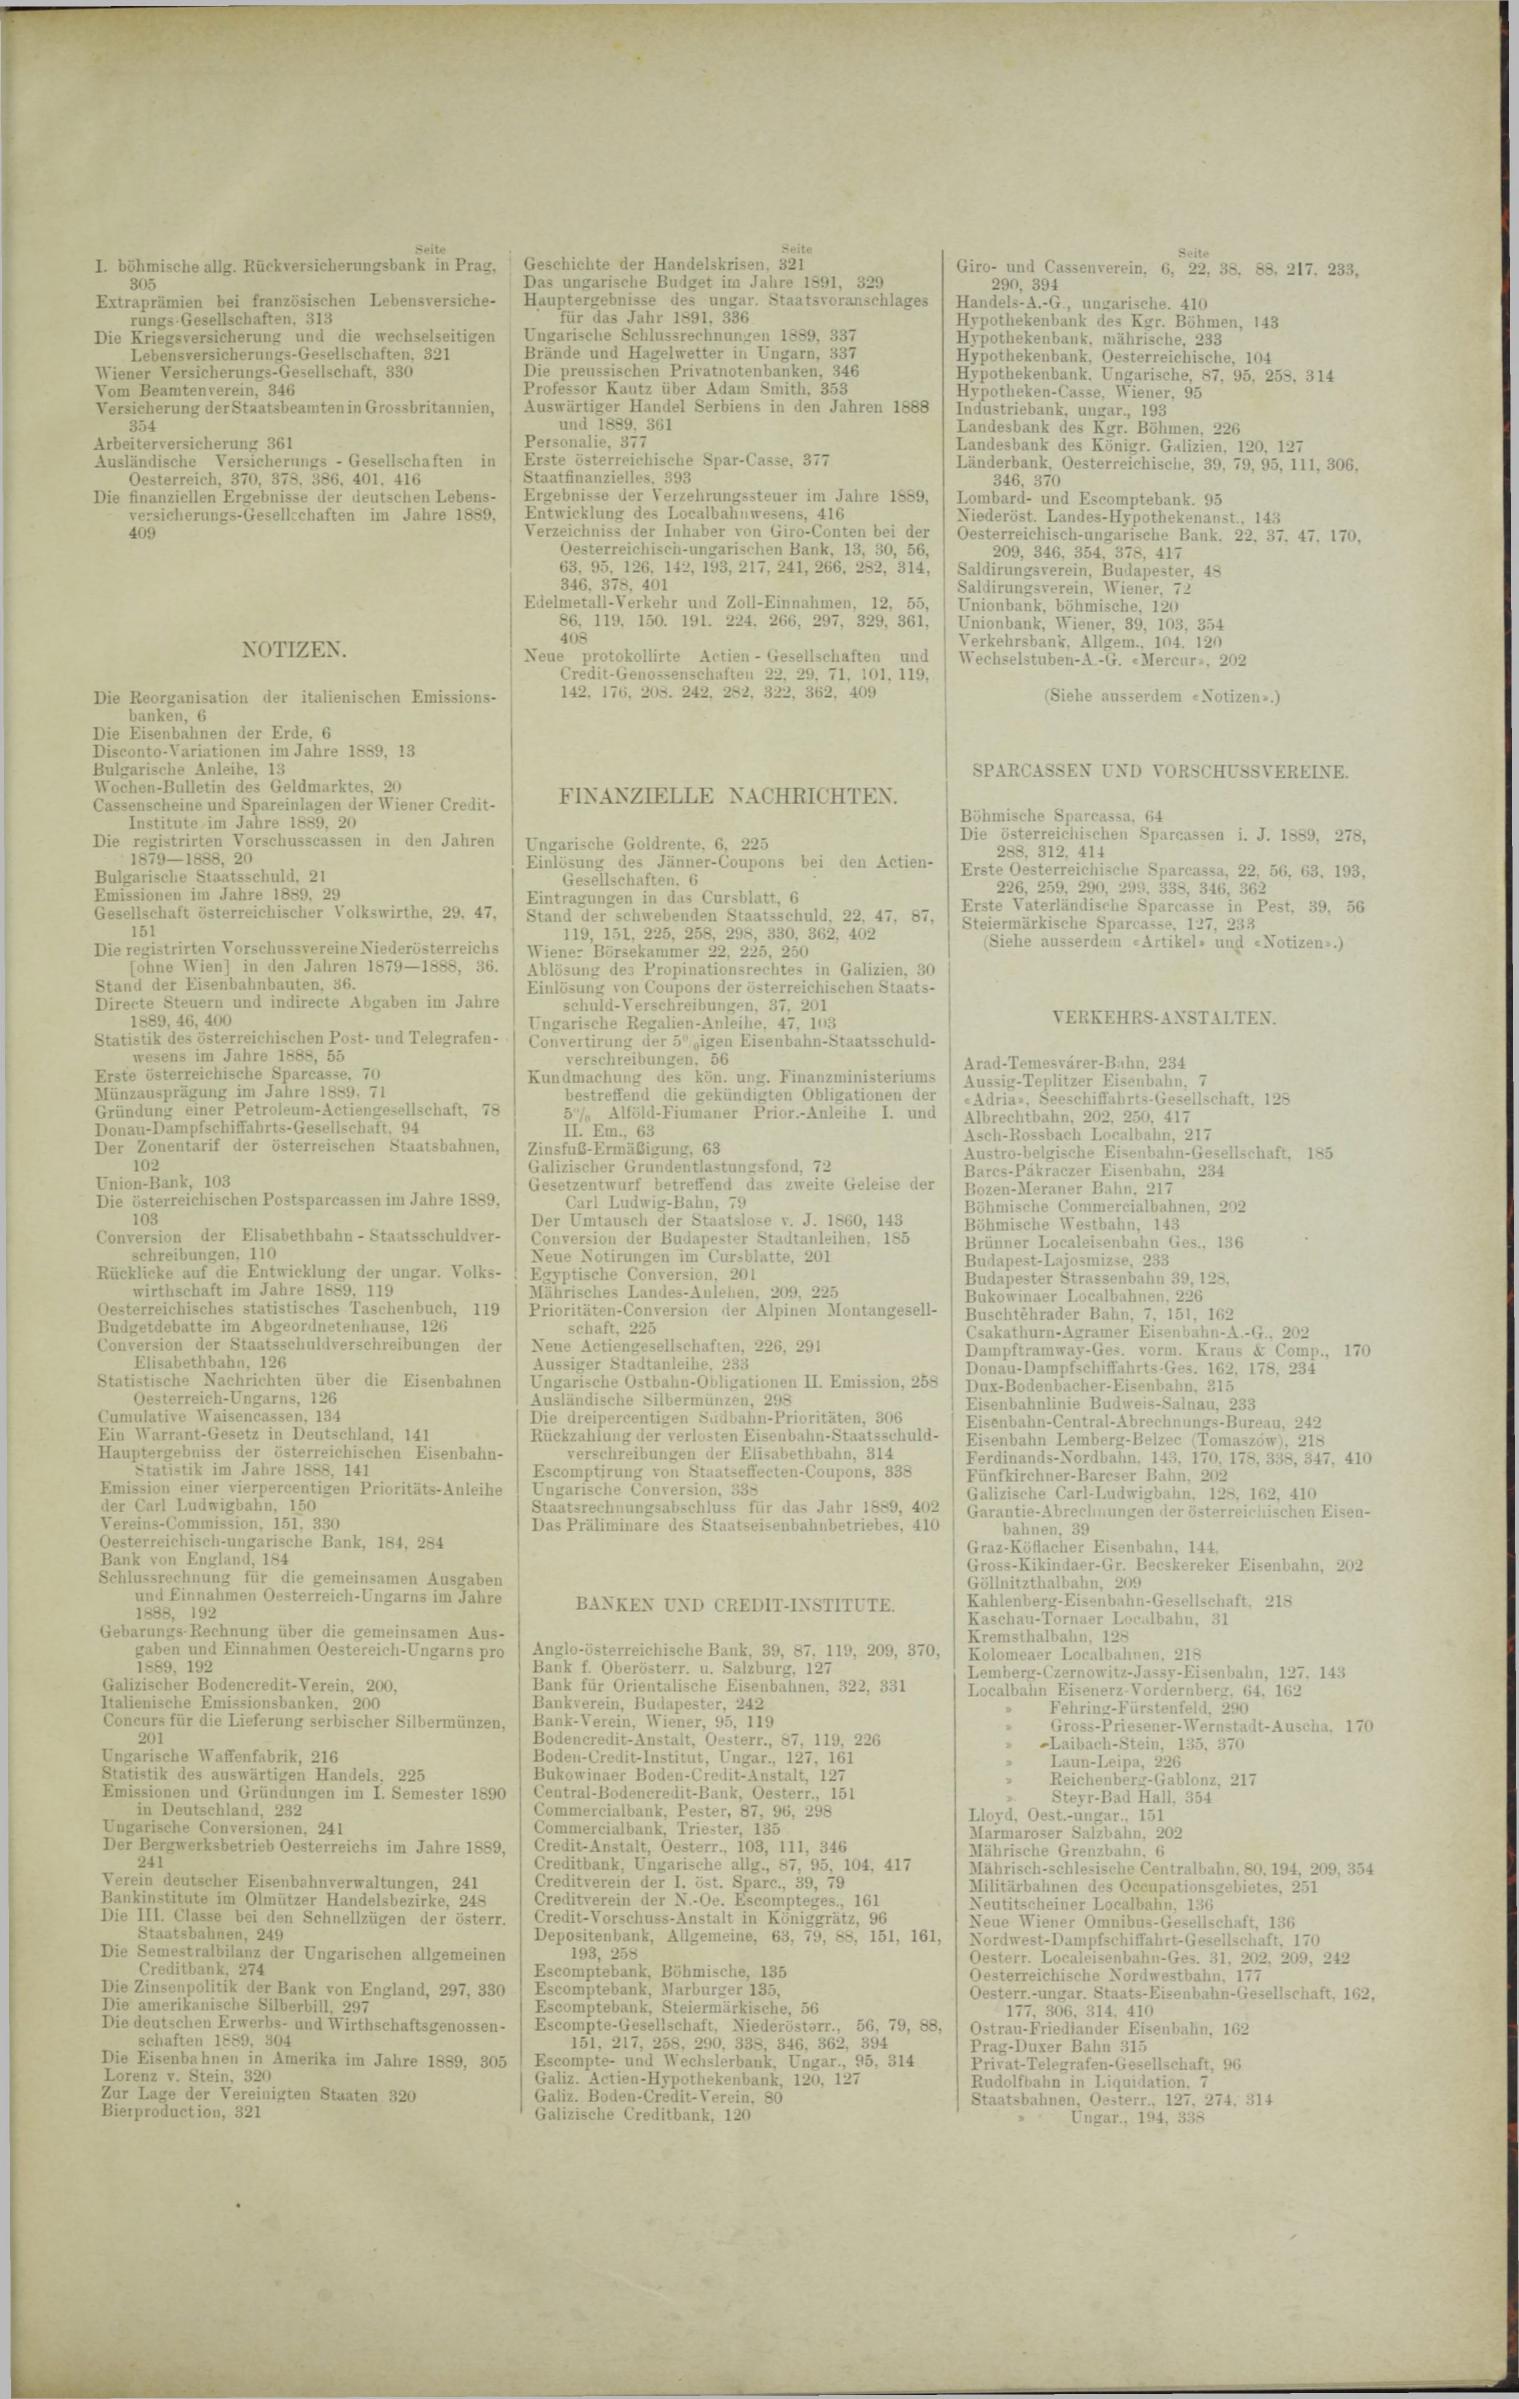 Der Tresor 25.09.1890 - Seite 11